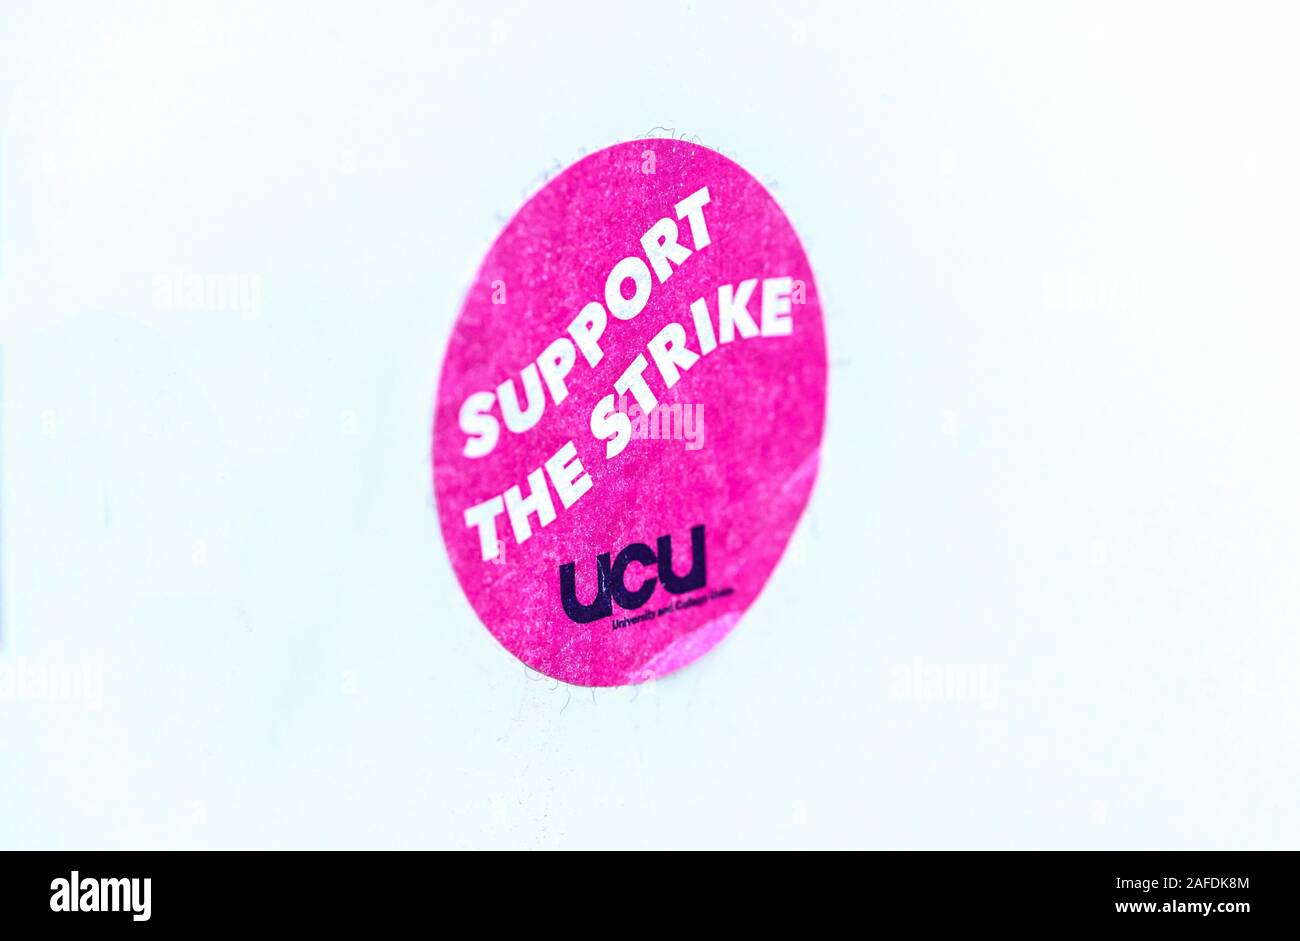 La UCU (Universidad Europea) adhesivo en apoyo de una huelga, Inglaterra, Reino Unido, 2019 Foto de stock